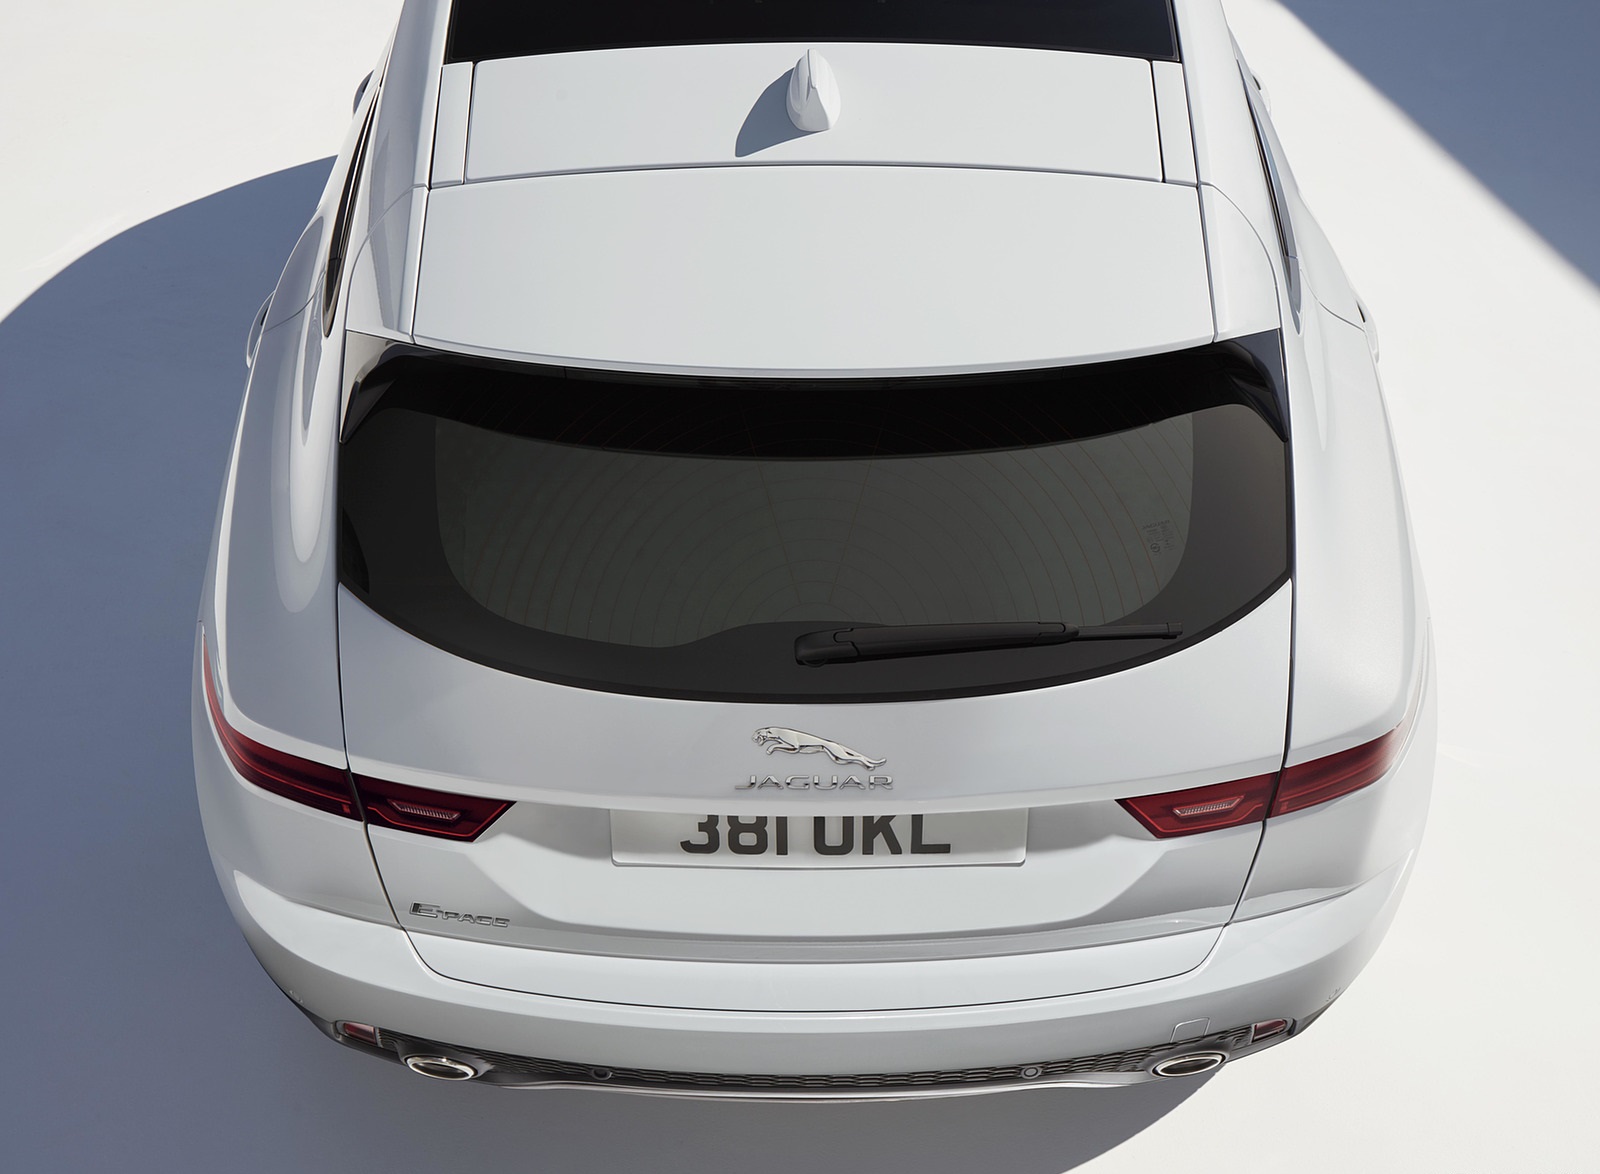 2018 Jaguar E-PACE Rear Wallpapers #70 of 100